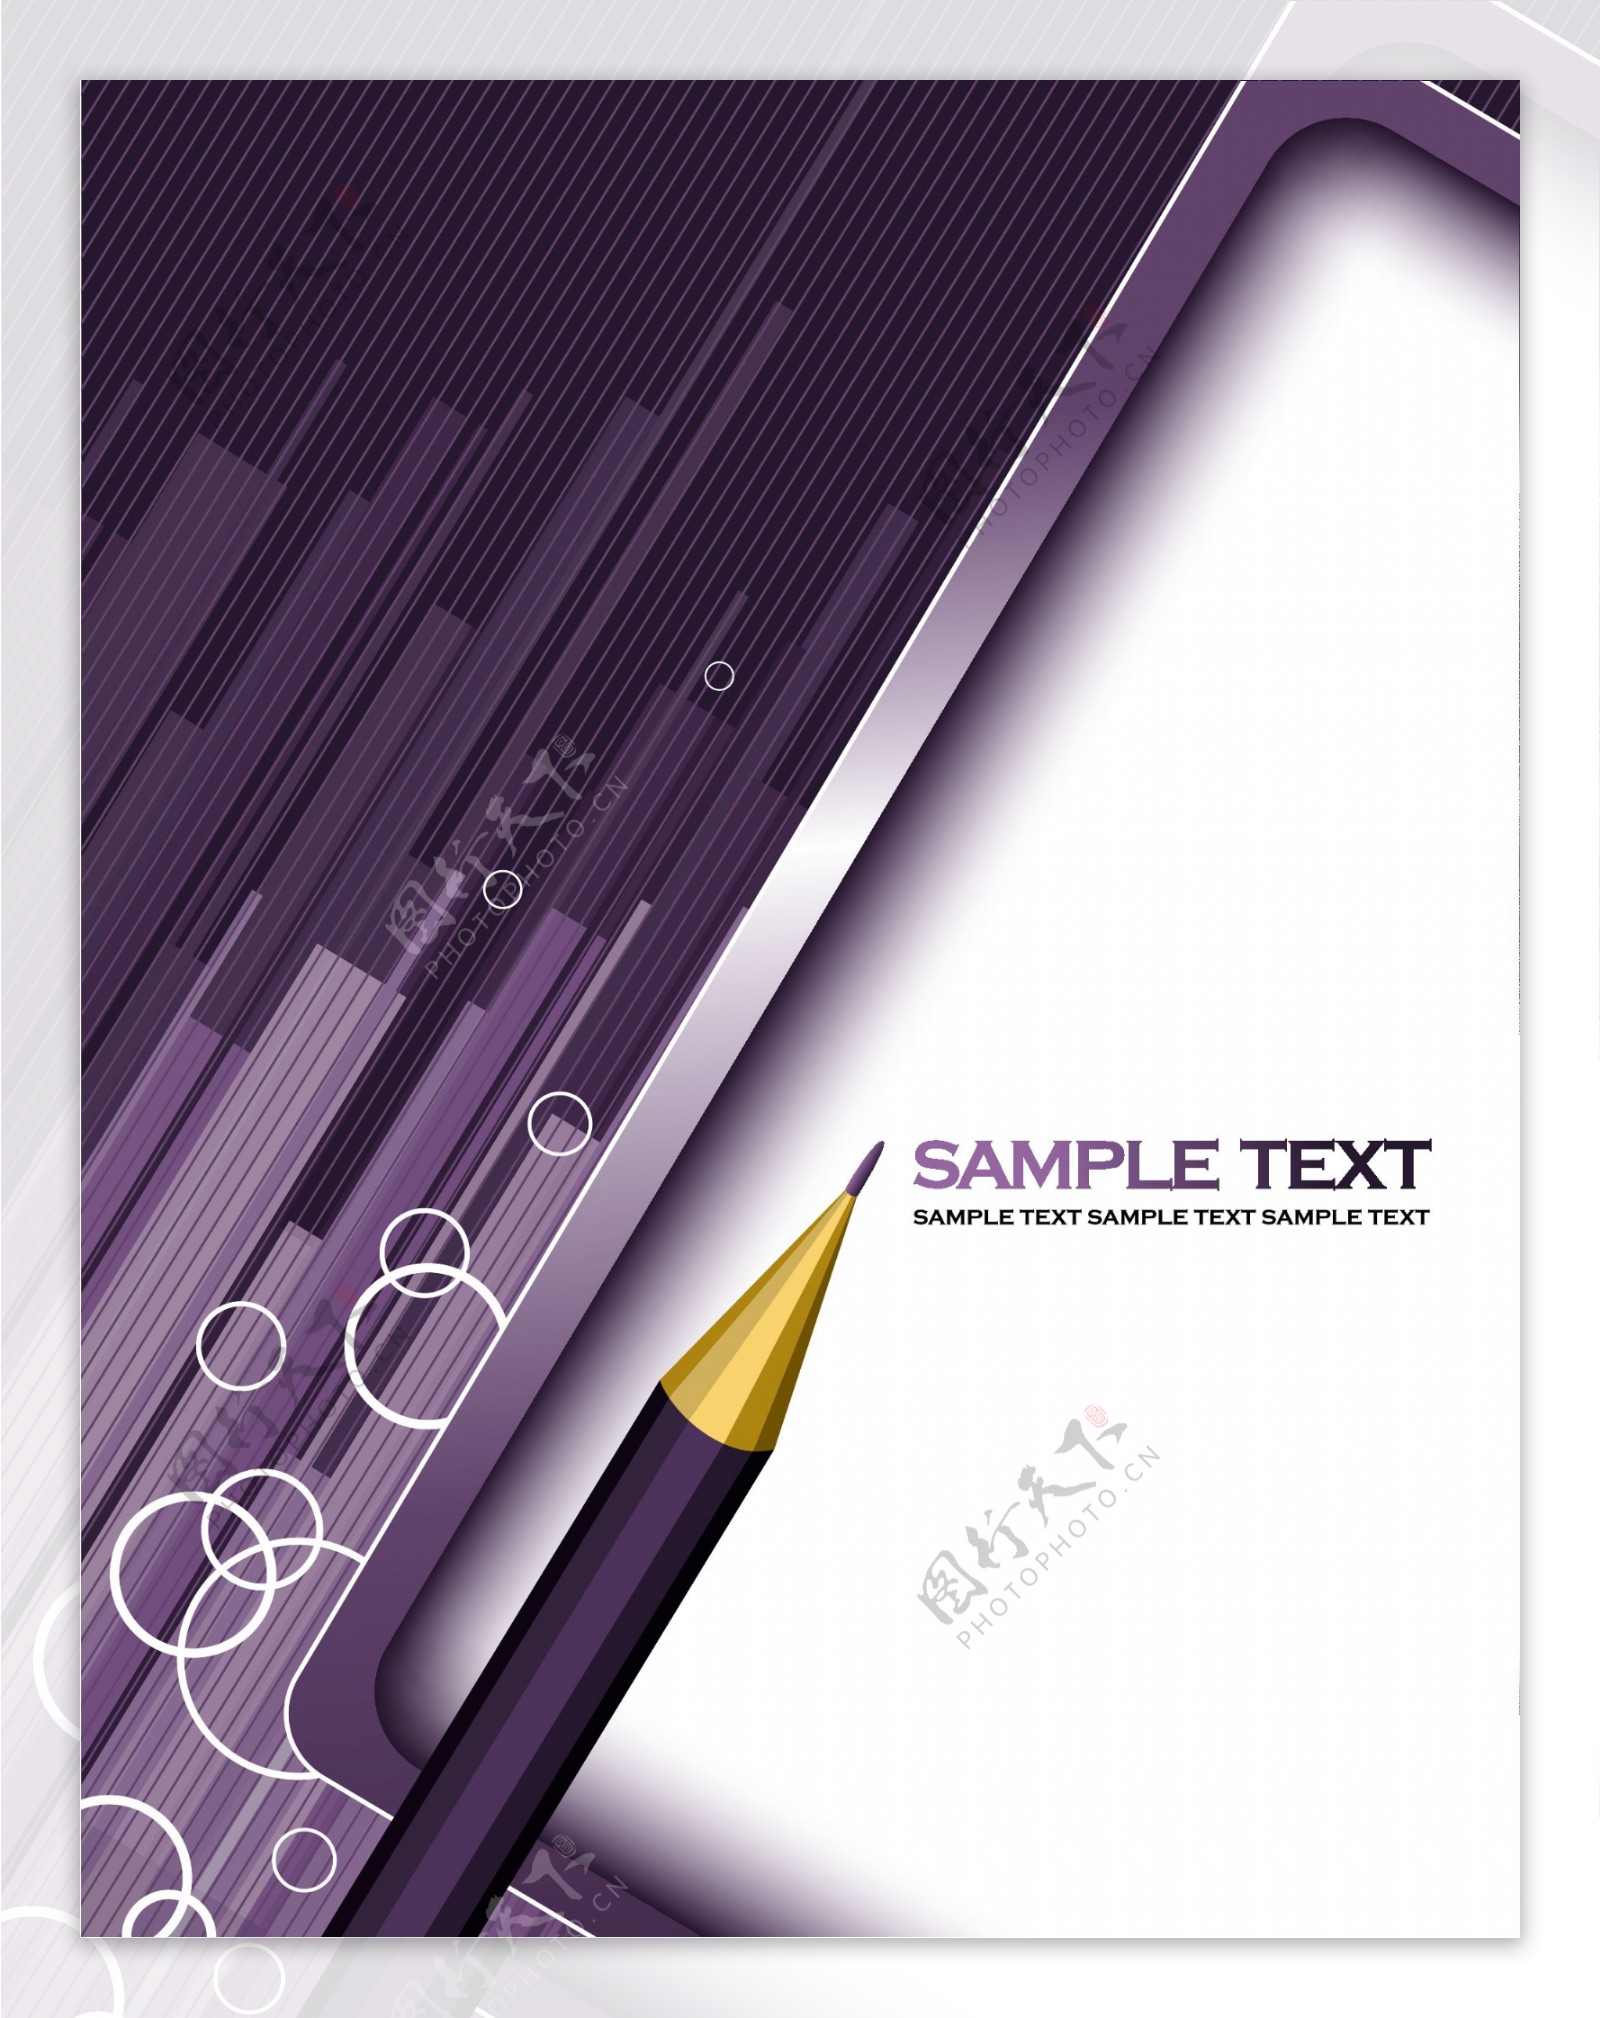 铅笔插图紫色背景设计